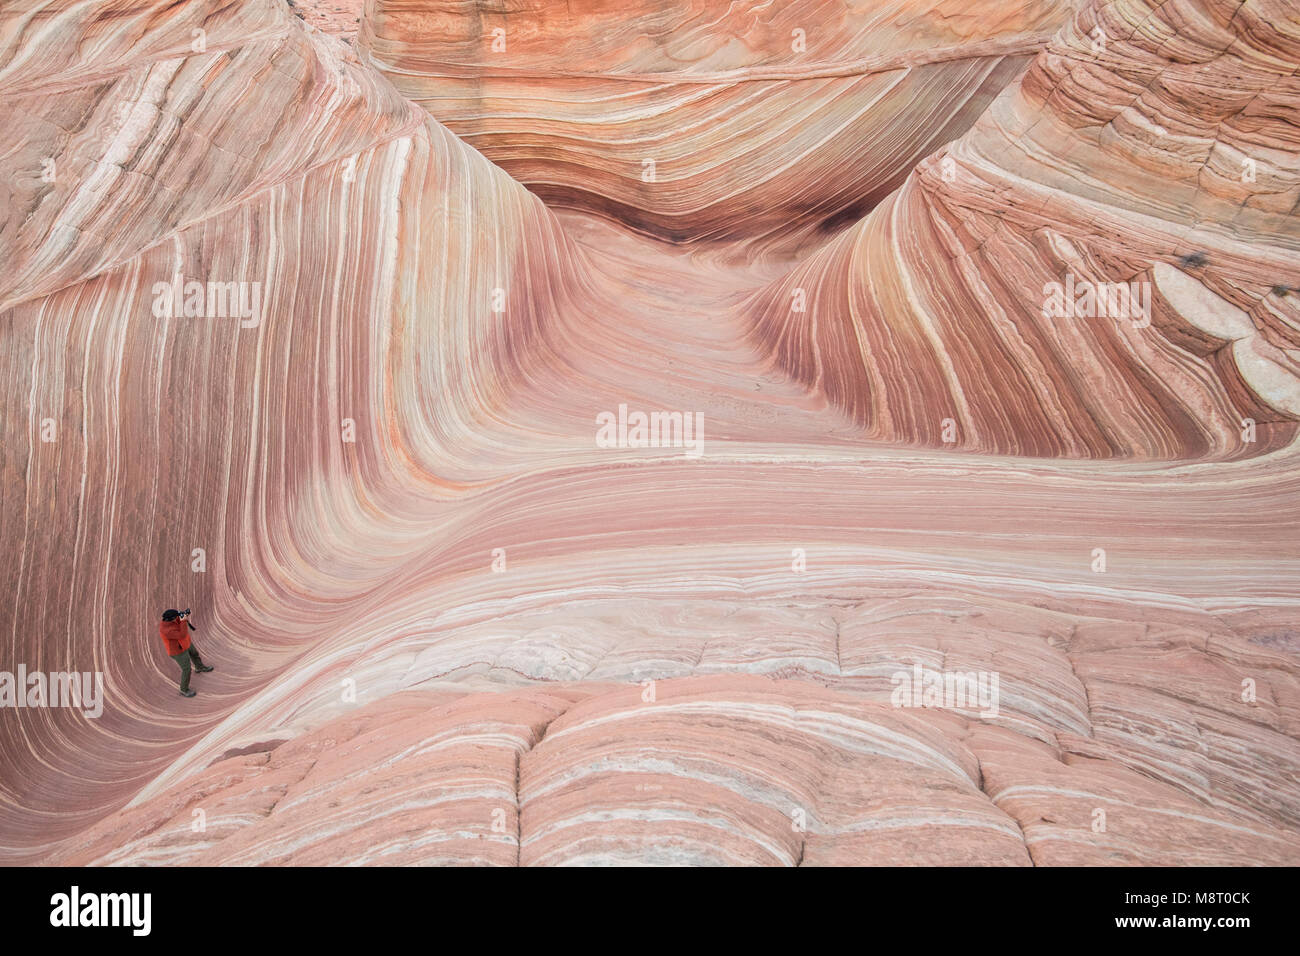 Un uomo prende un'immagine dell'onda roccia arenaria formazione, situato in Coyote Buttes North, Paria Canyon Vermillion Cliffs Wilderness. Foto Stock